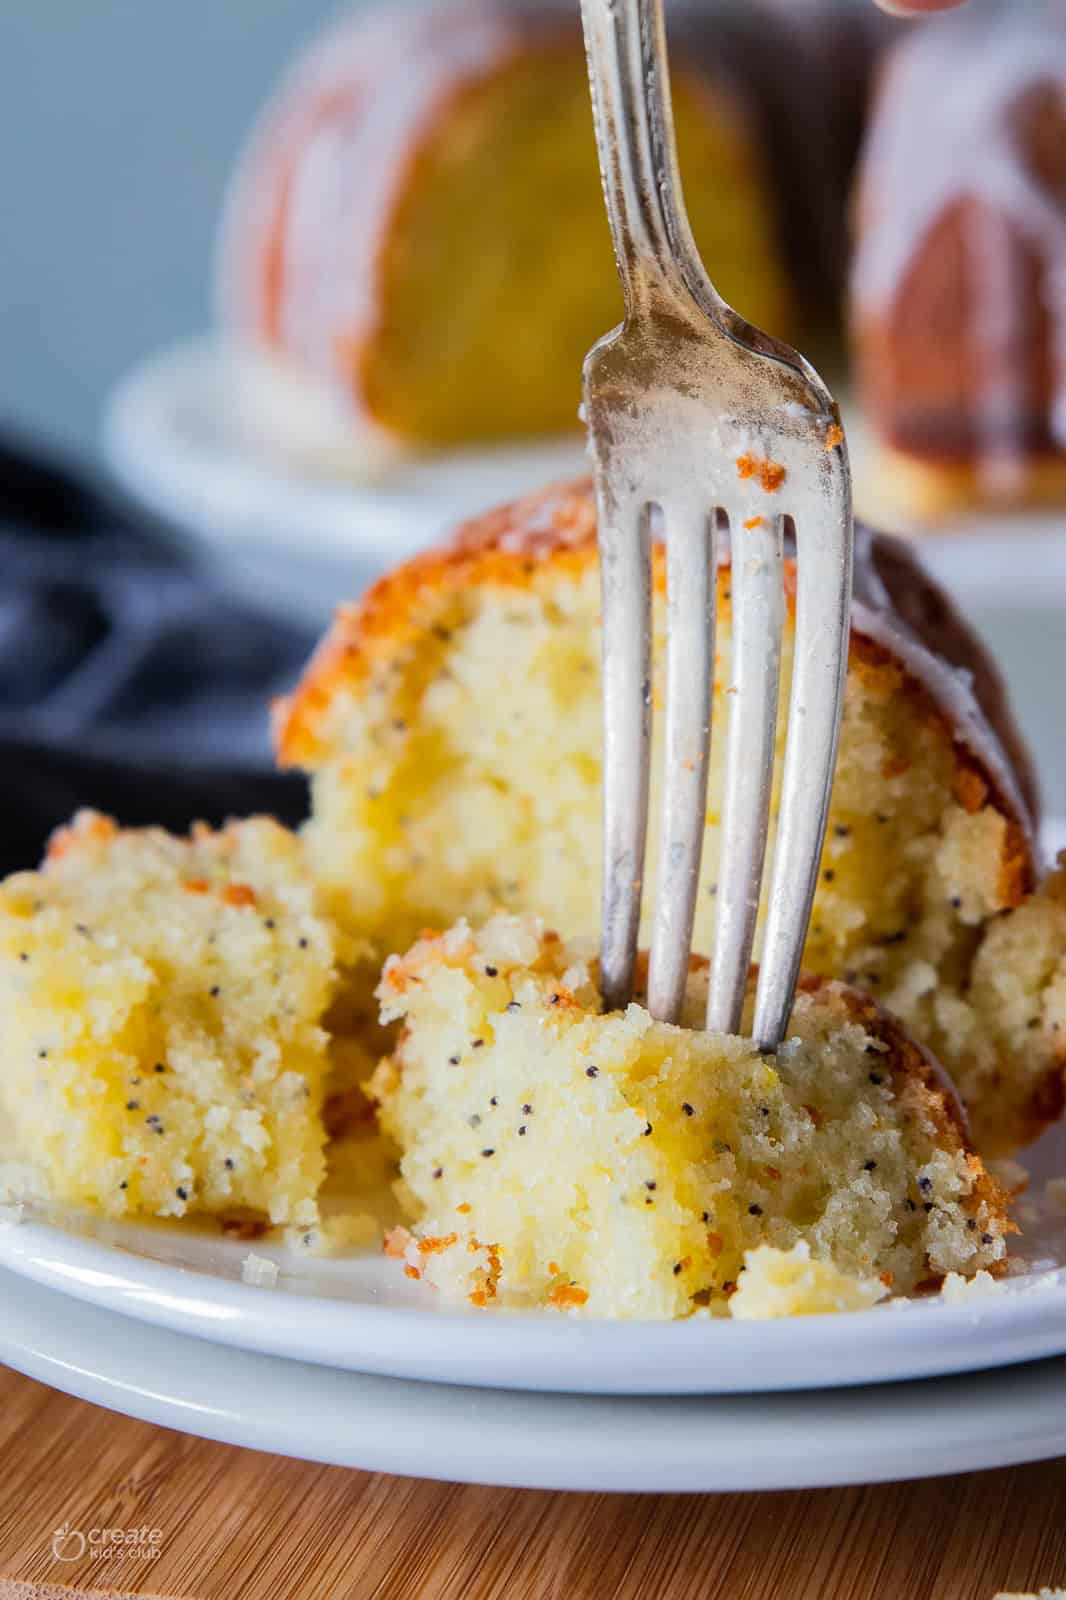 slice of lemon poppyseed cake on plate with fork